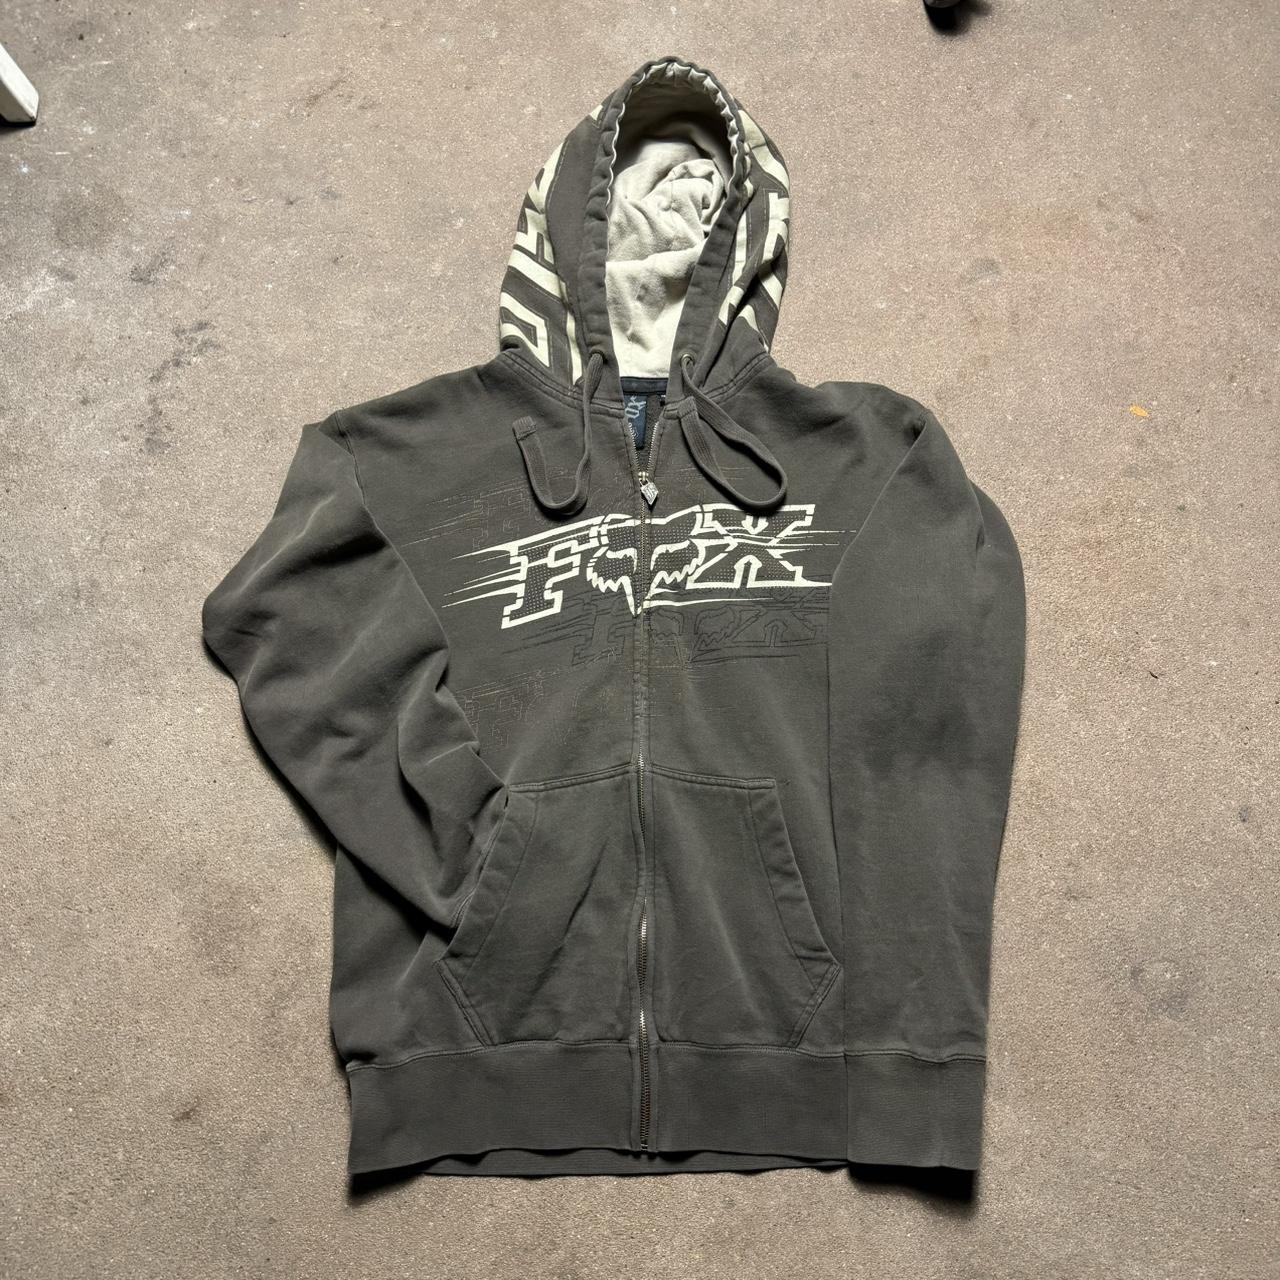 Y2K Rox Racing Zip Up hoodie in a nice earth tone color - Depop